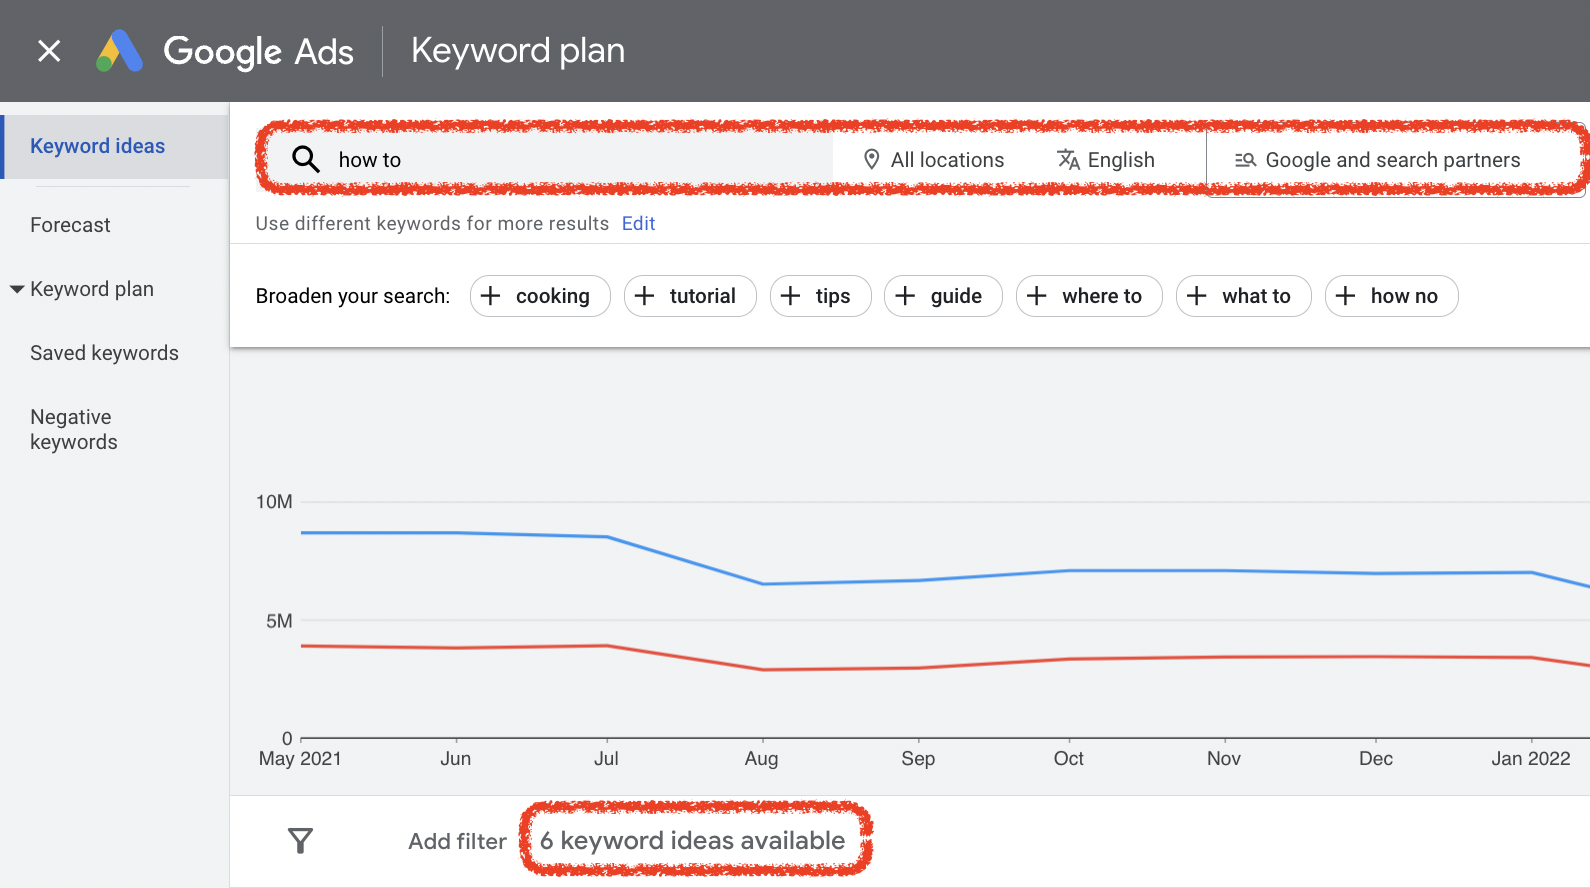 Google Keyword Planner finds no results